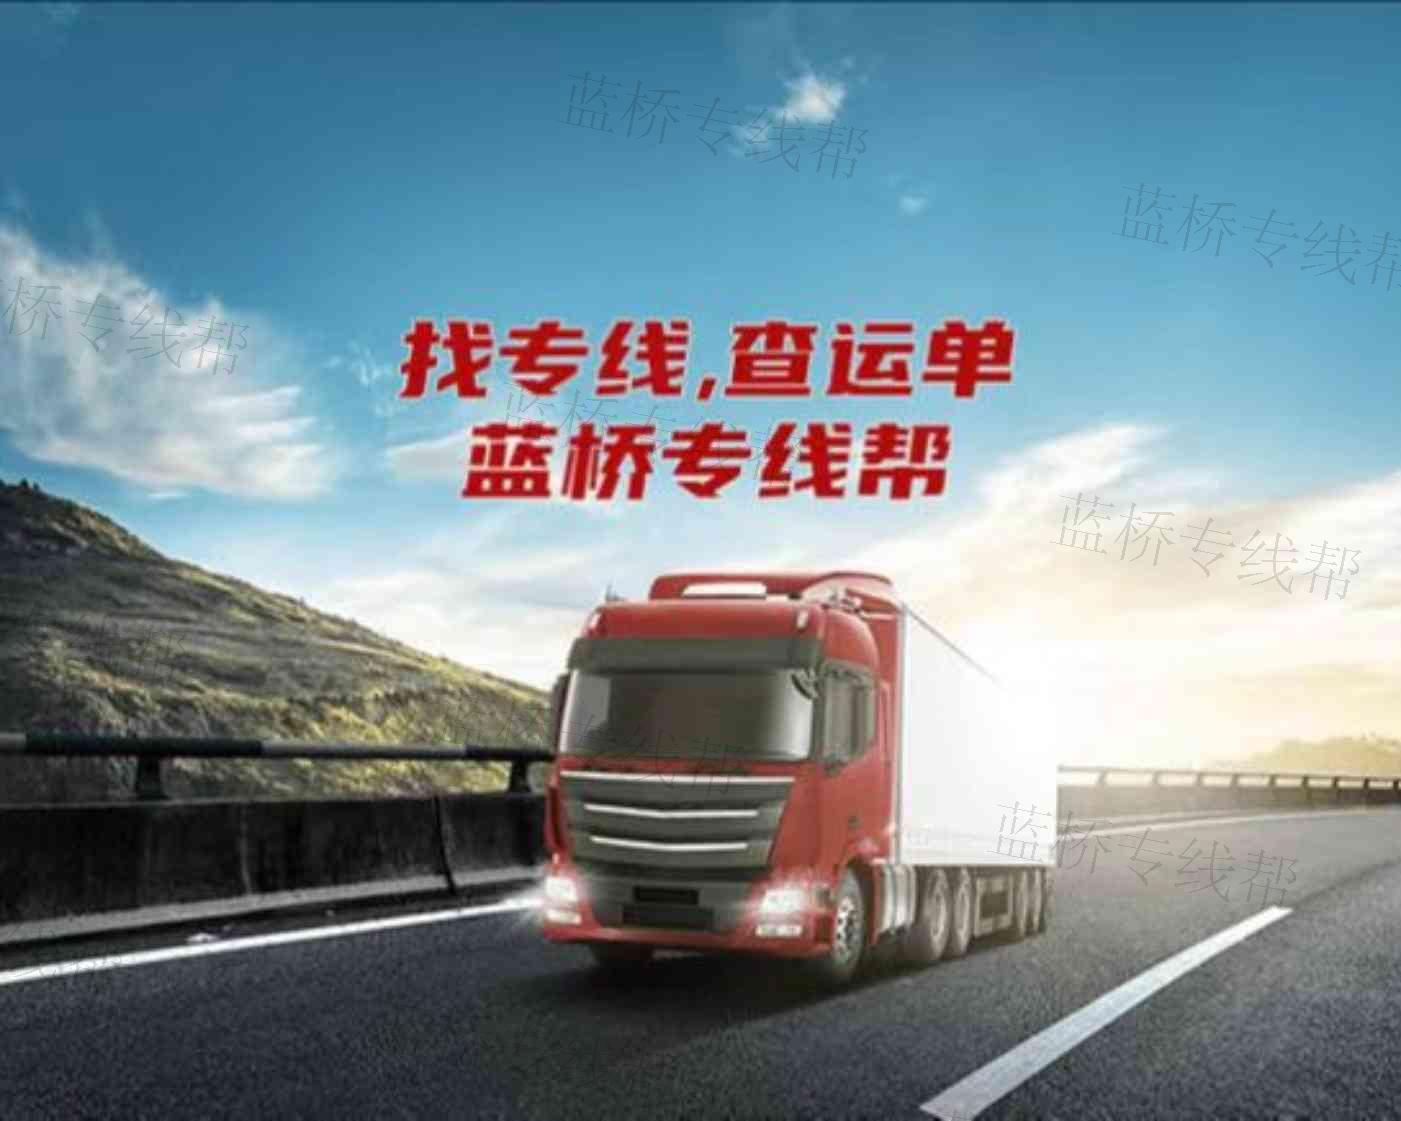 北京京蒙捷通物流有限公司